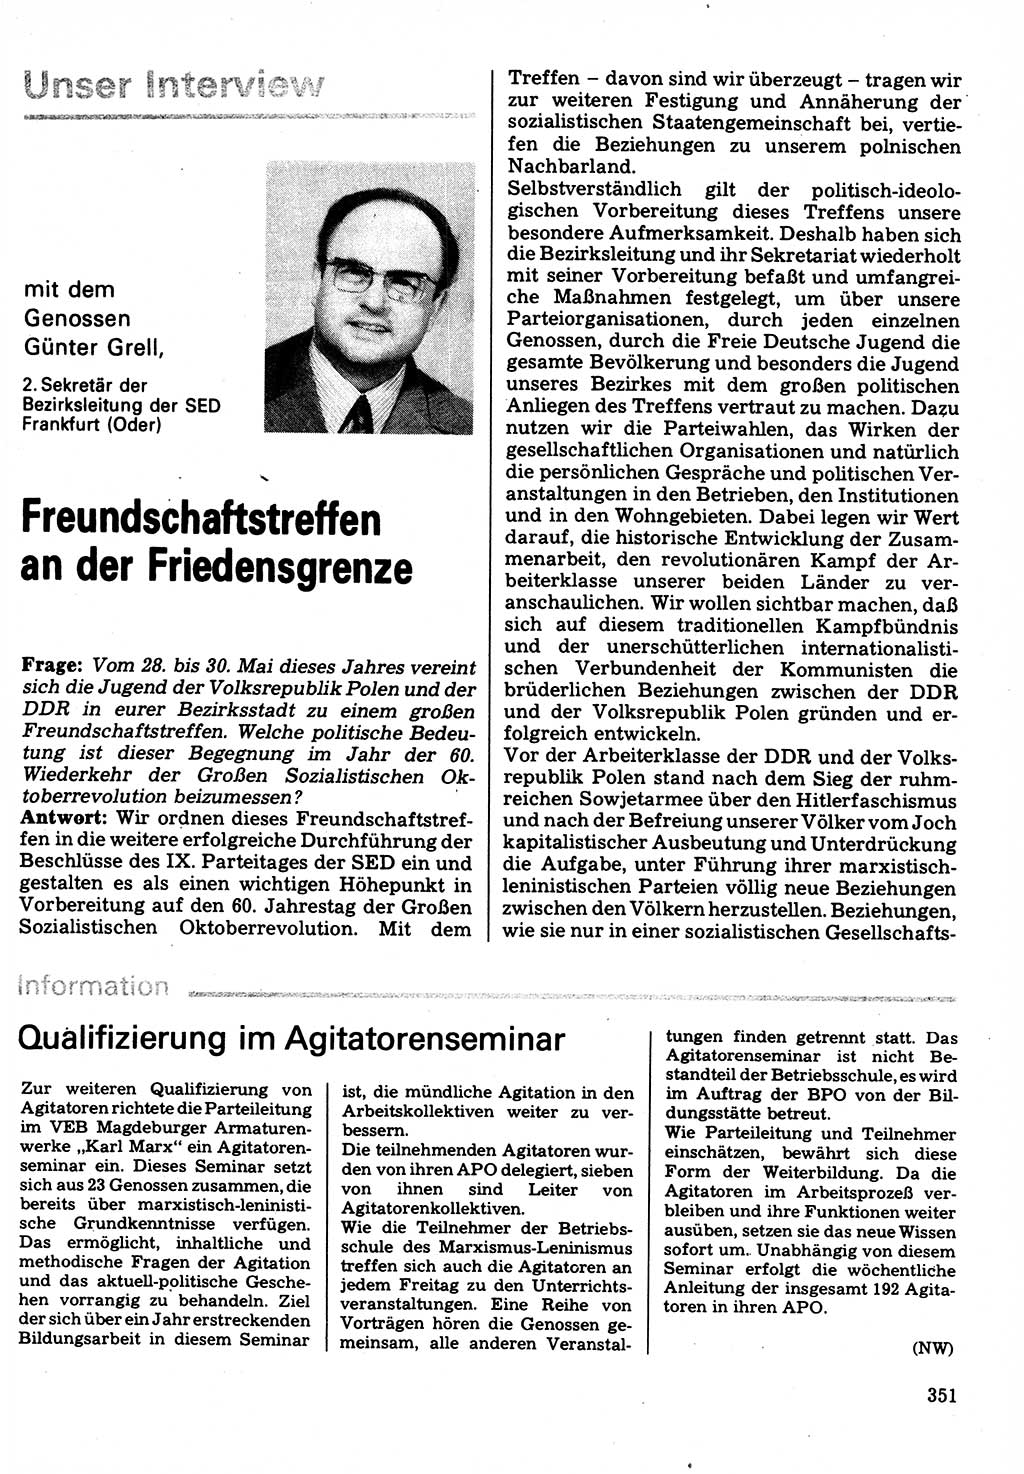 Neuer Weg (NW), Organ des Zentralkomitees (ZK) der SED (Sozialistische Einheitspartei Deutschlands) für Fragen des Parteilebens, 32. Jahrgang [Deutsche Demokratische Republik (DDR)] 1977, Seite 351 (NW ZK SED DDR 1977, S. 351)